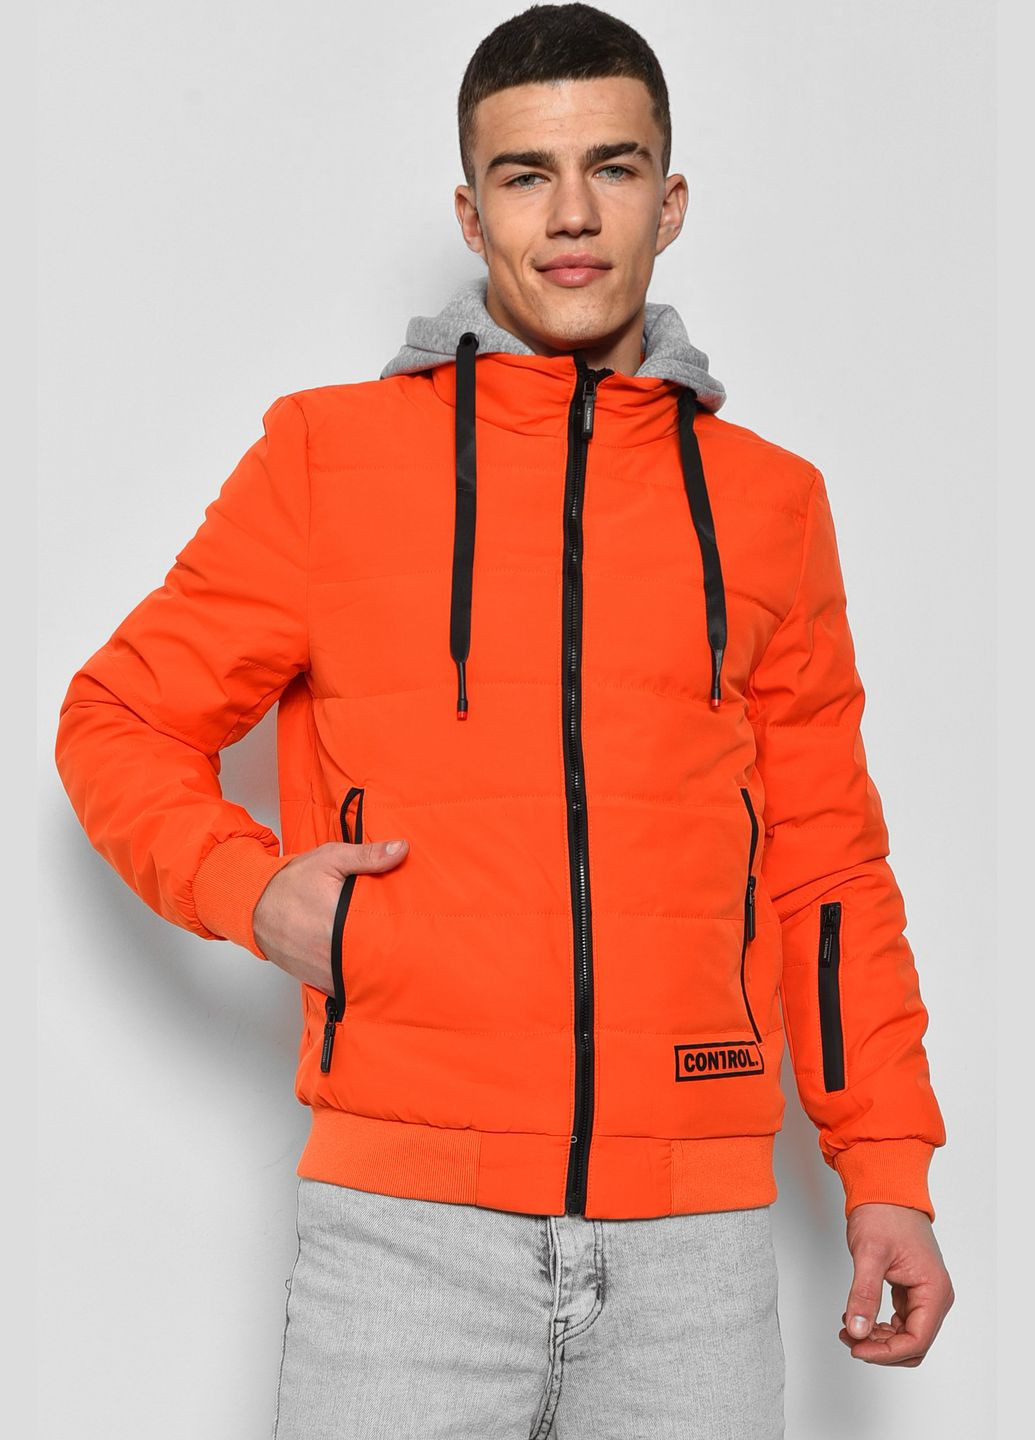 Оранжевая демисезонная куртка мужская демисезонная оранжевого цвета Let's Shop